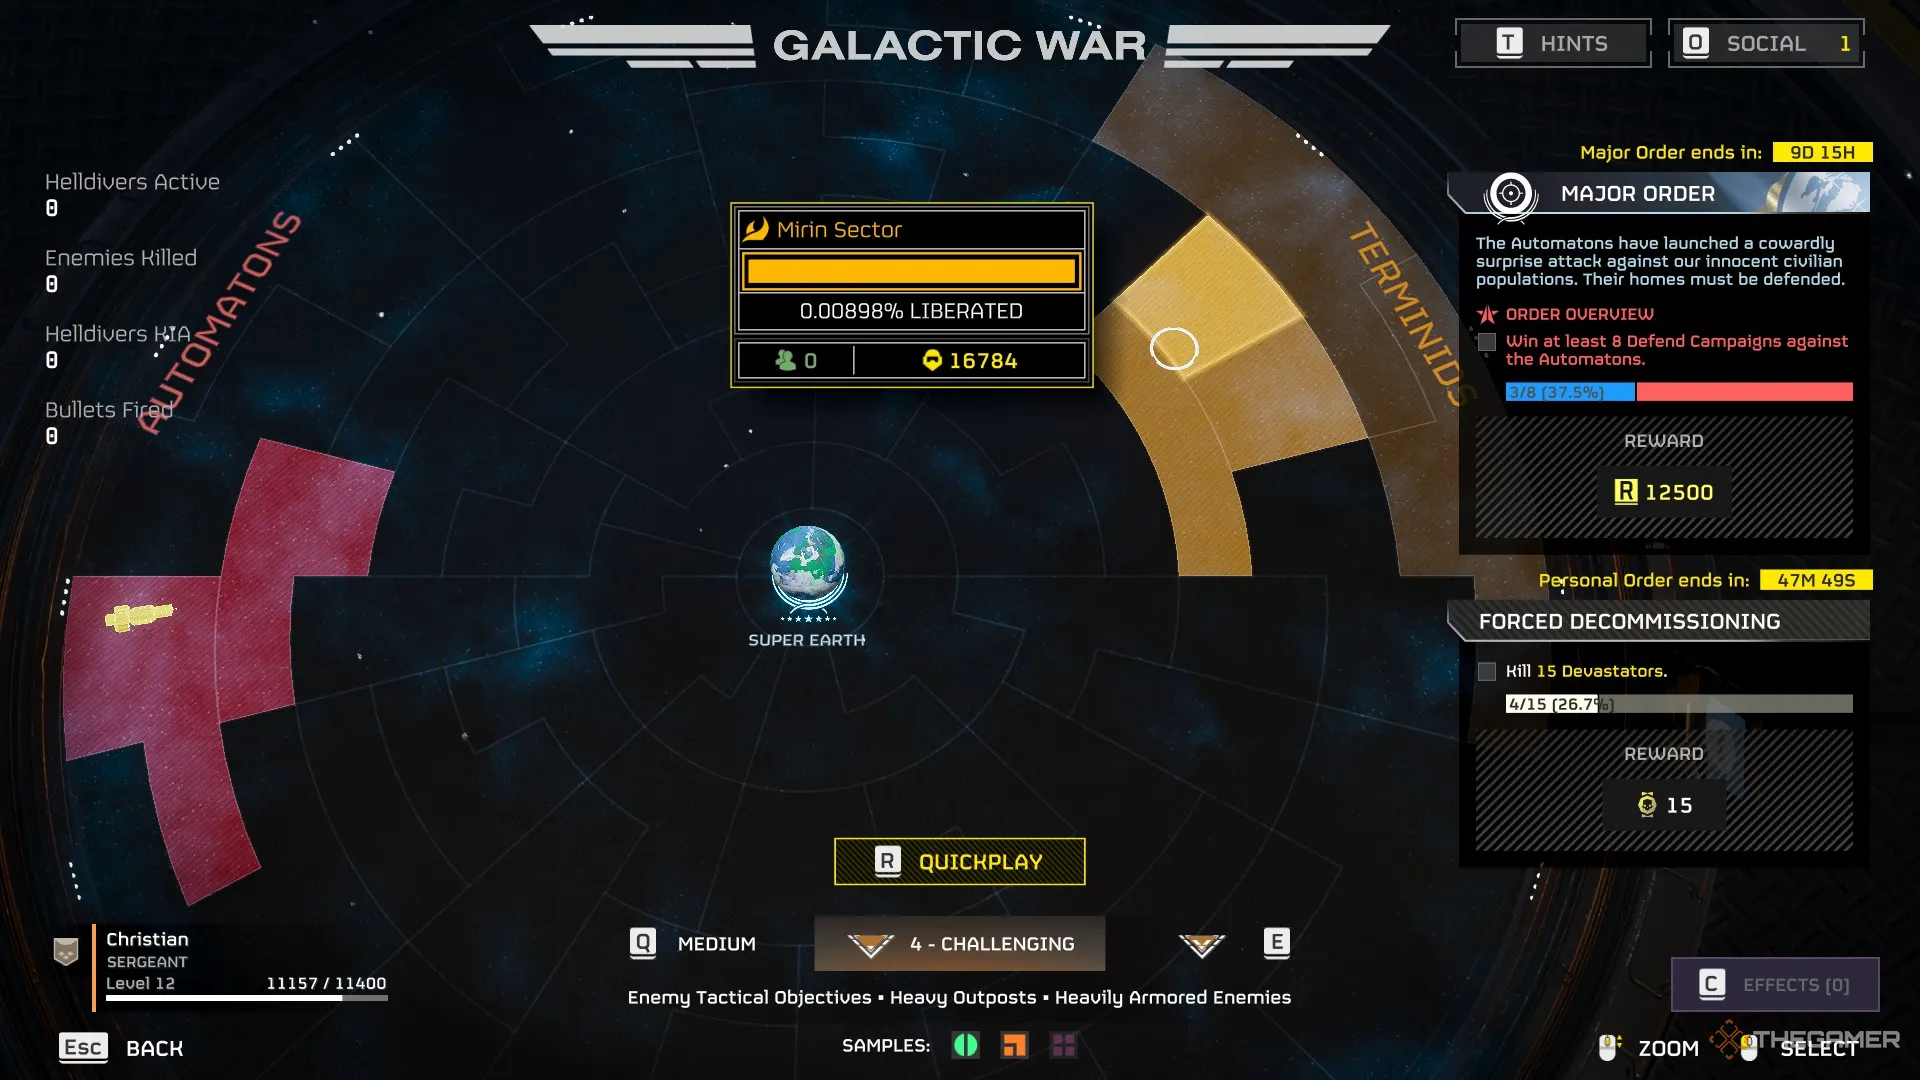 Снимок экрана из Helldivers 2 с маркером над стороной галактической войны терминидов, показанным желтым цветом.